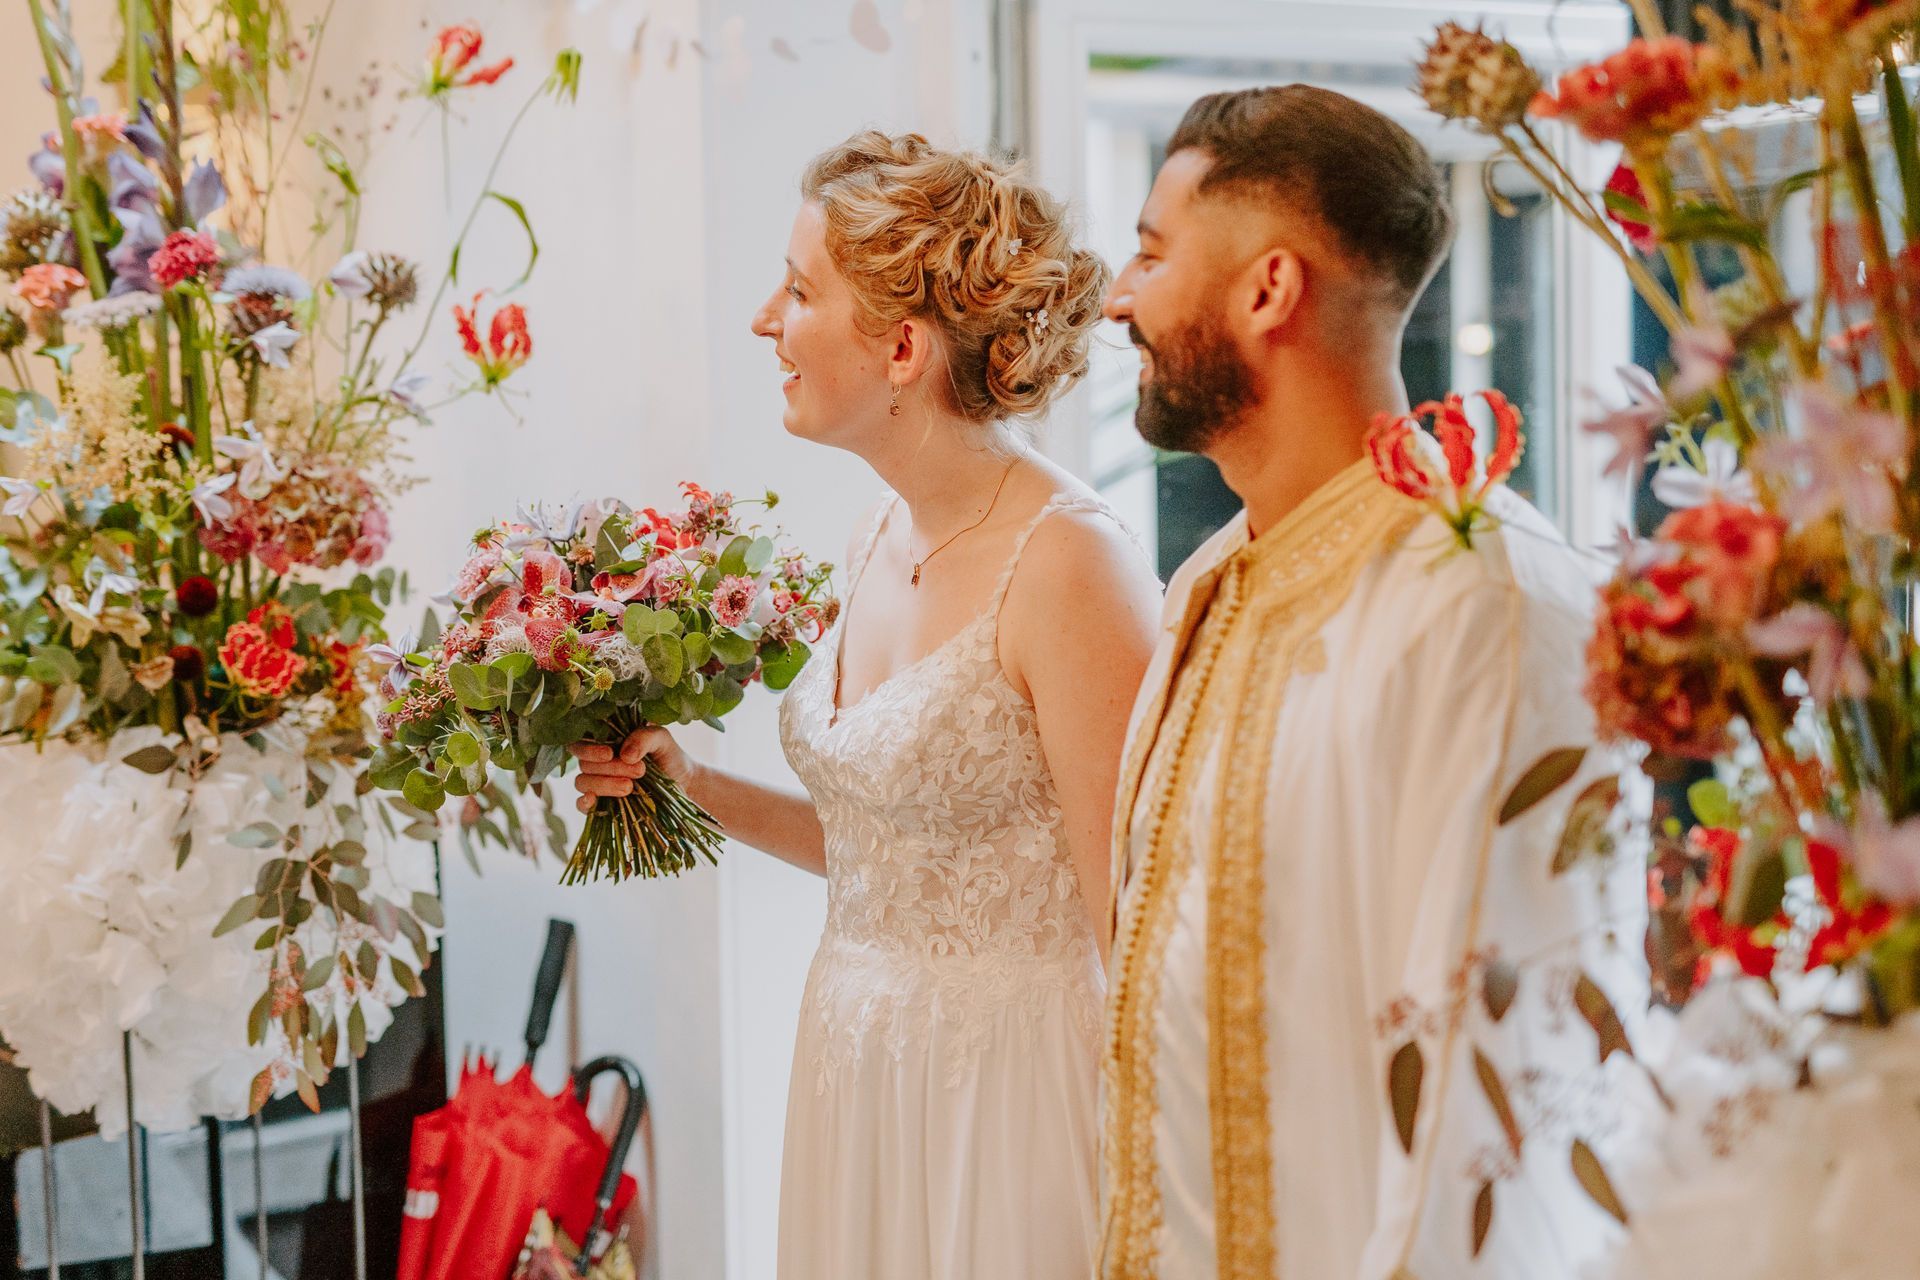 Brautpaar inmitten von leuchtenden Blumen feiern ihre moderne Oriental Boho Hochzeit.Der Bräutigam trägt eine Dishdasha, die Braut ein Bohokleid. Ihre blonden Haare sind hochgesteckt.